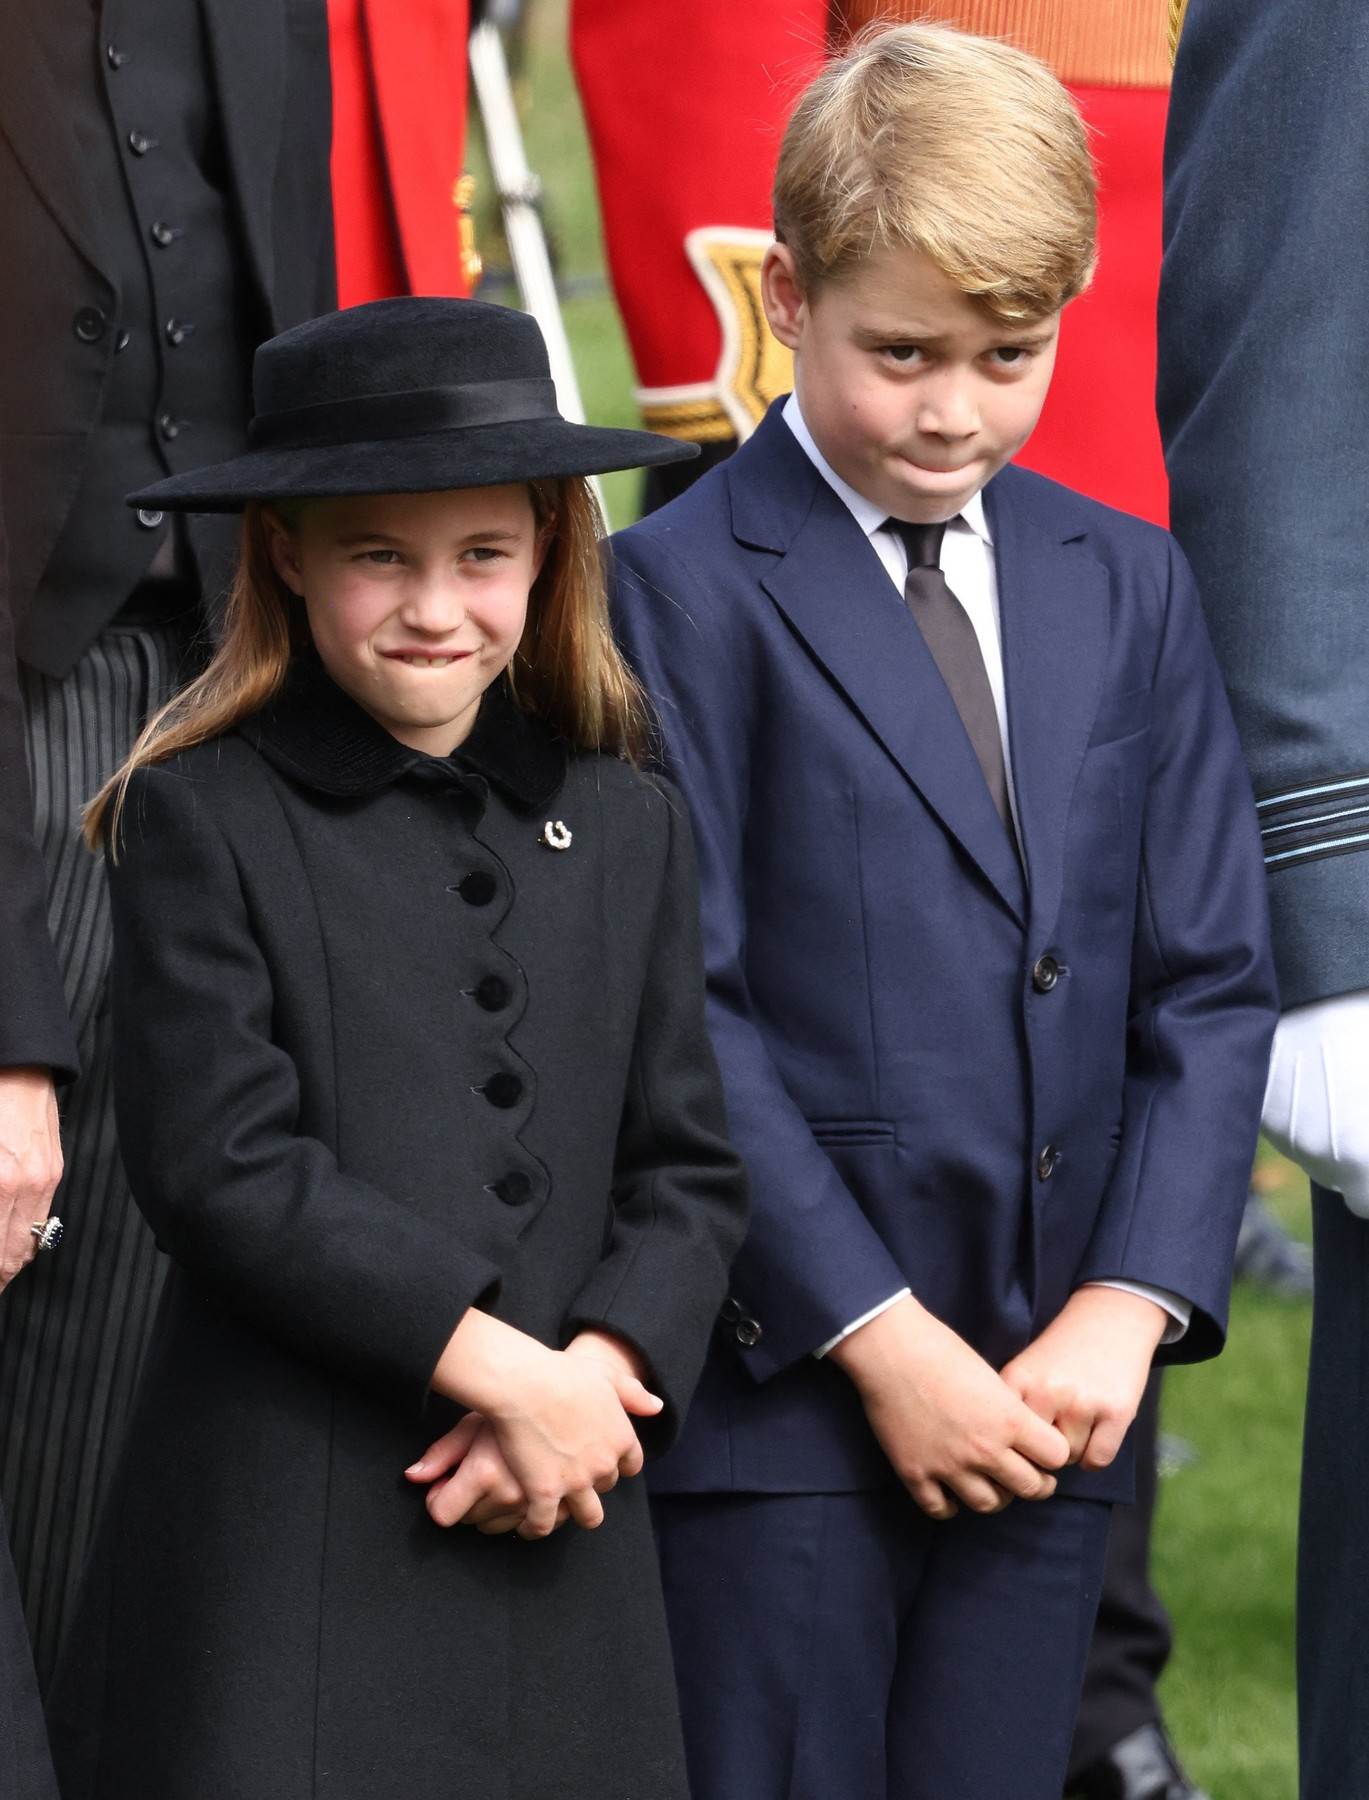  Princeza Šarlot Elizabet i princ Džordž su bili na sahrani kraljice Elizabete II. 